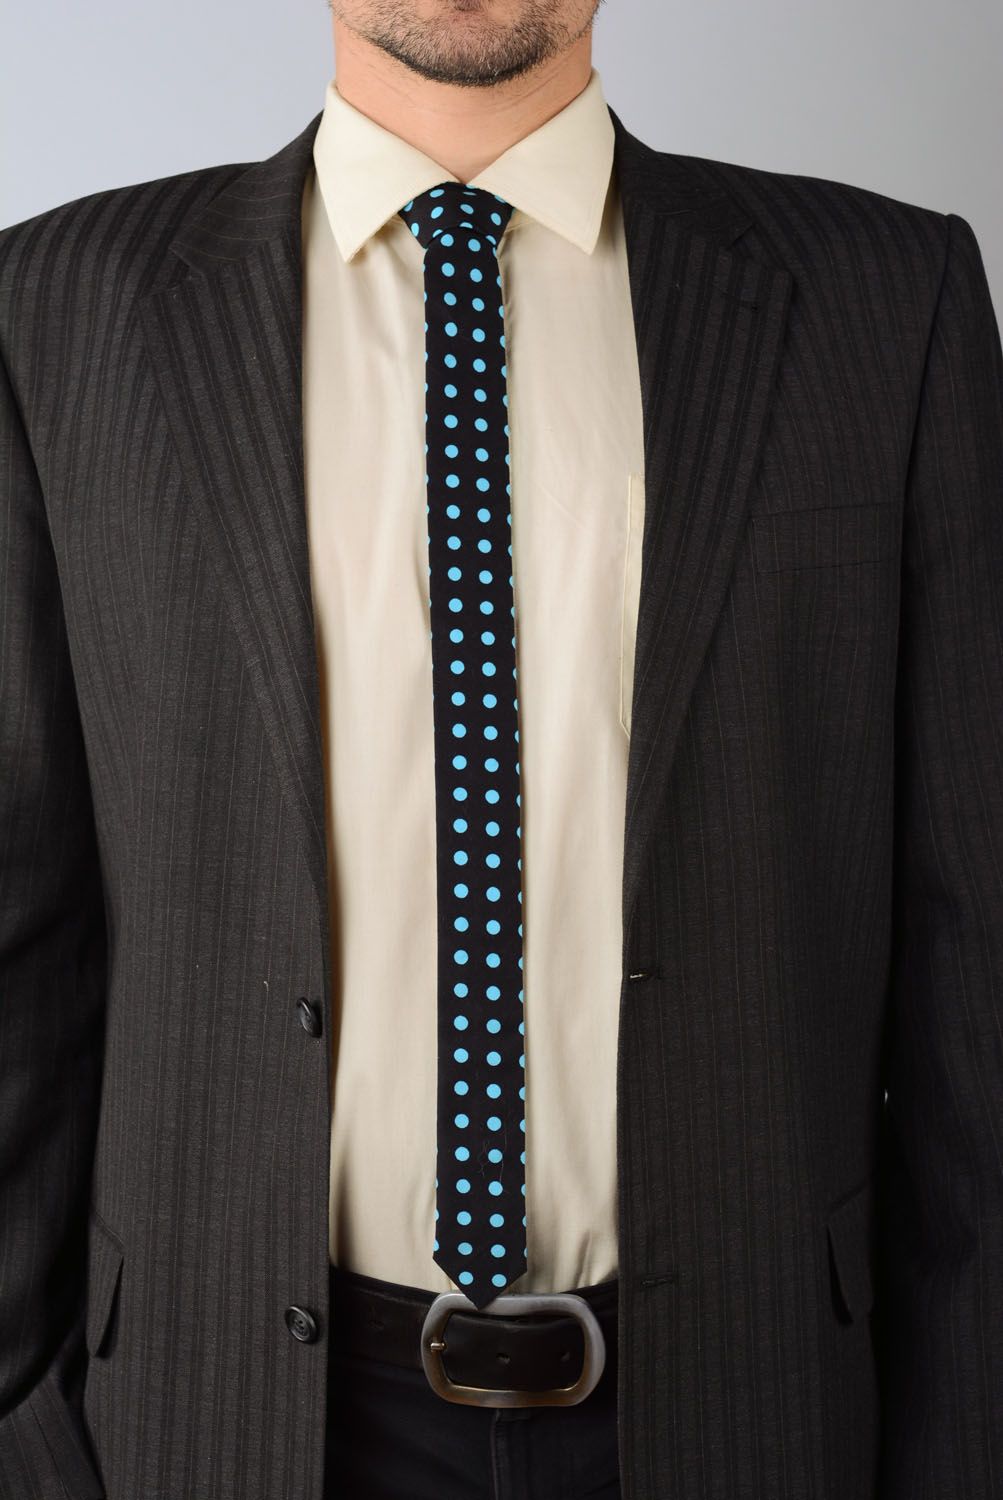 Cravate en coton Noir à pois bleus photo 1